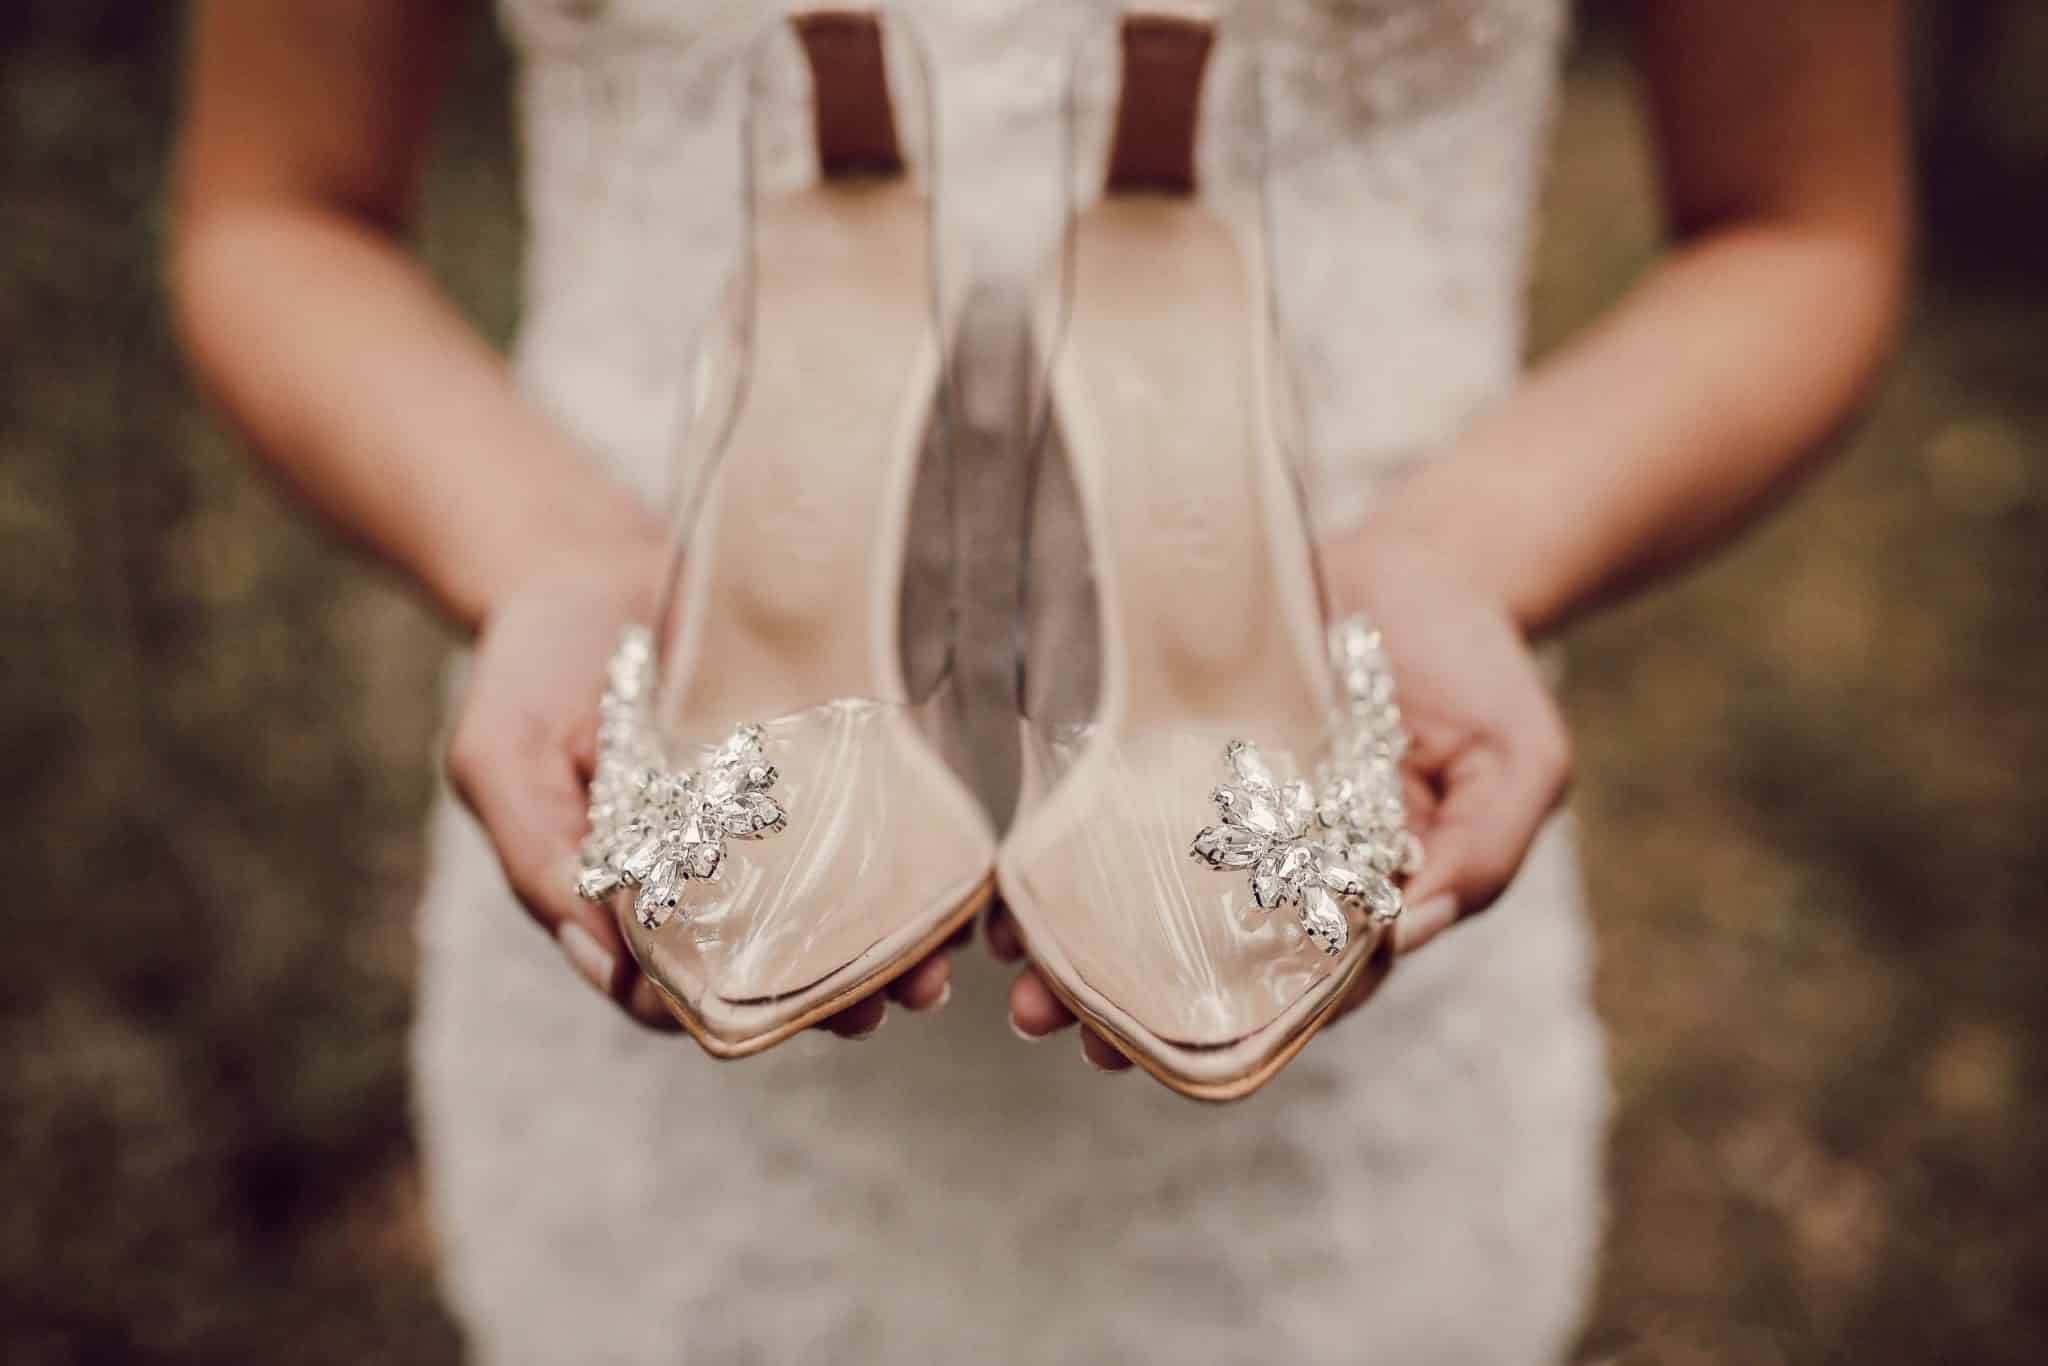 Notre sortie de cérémonie DIY  Le blog d'Héloïse – Bijoux de mariée,  conseils, décorations et tendances pour la préparation de votre mariage